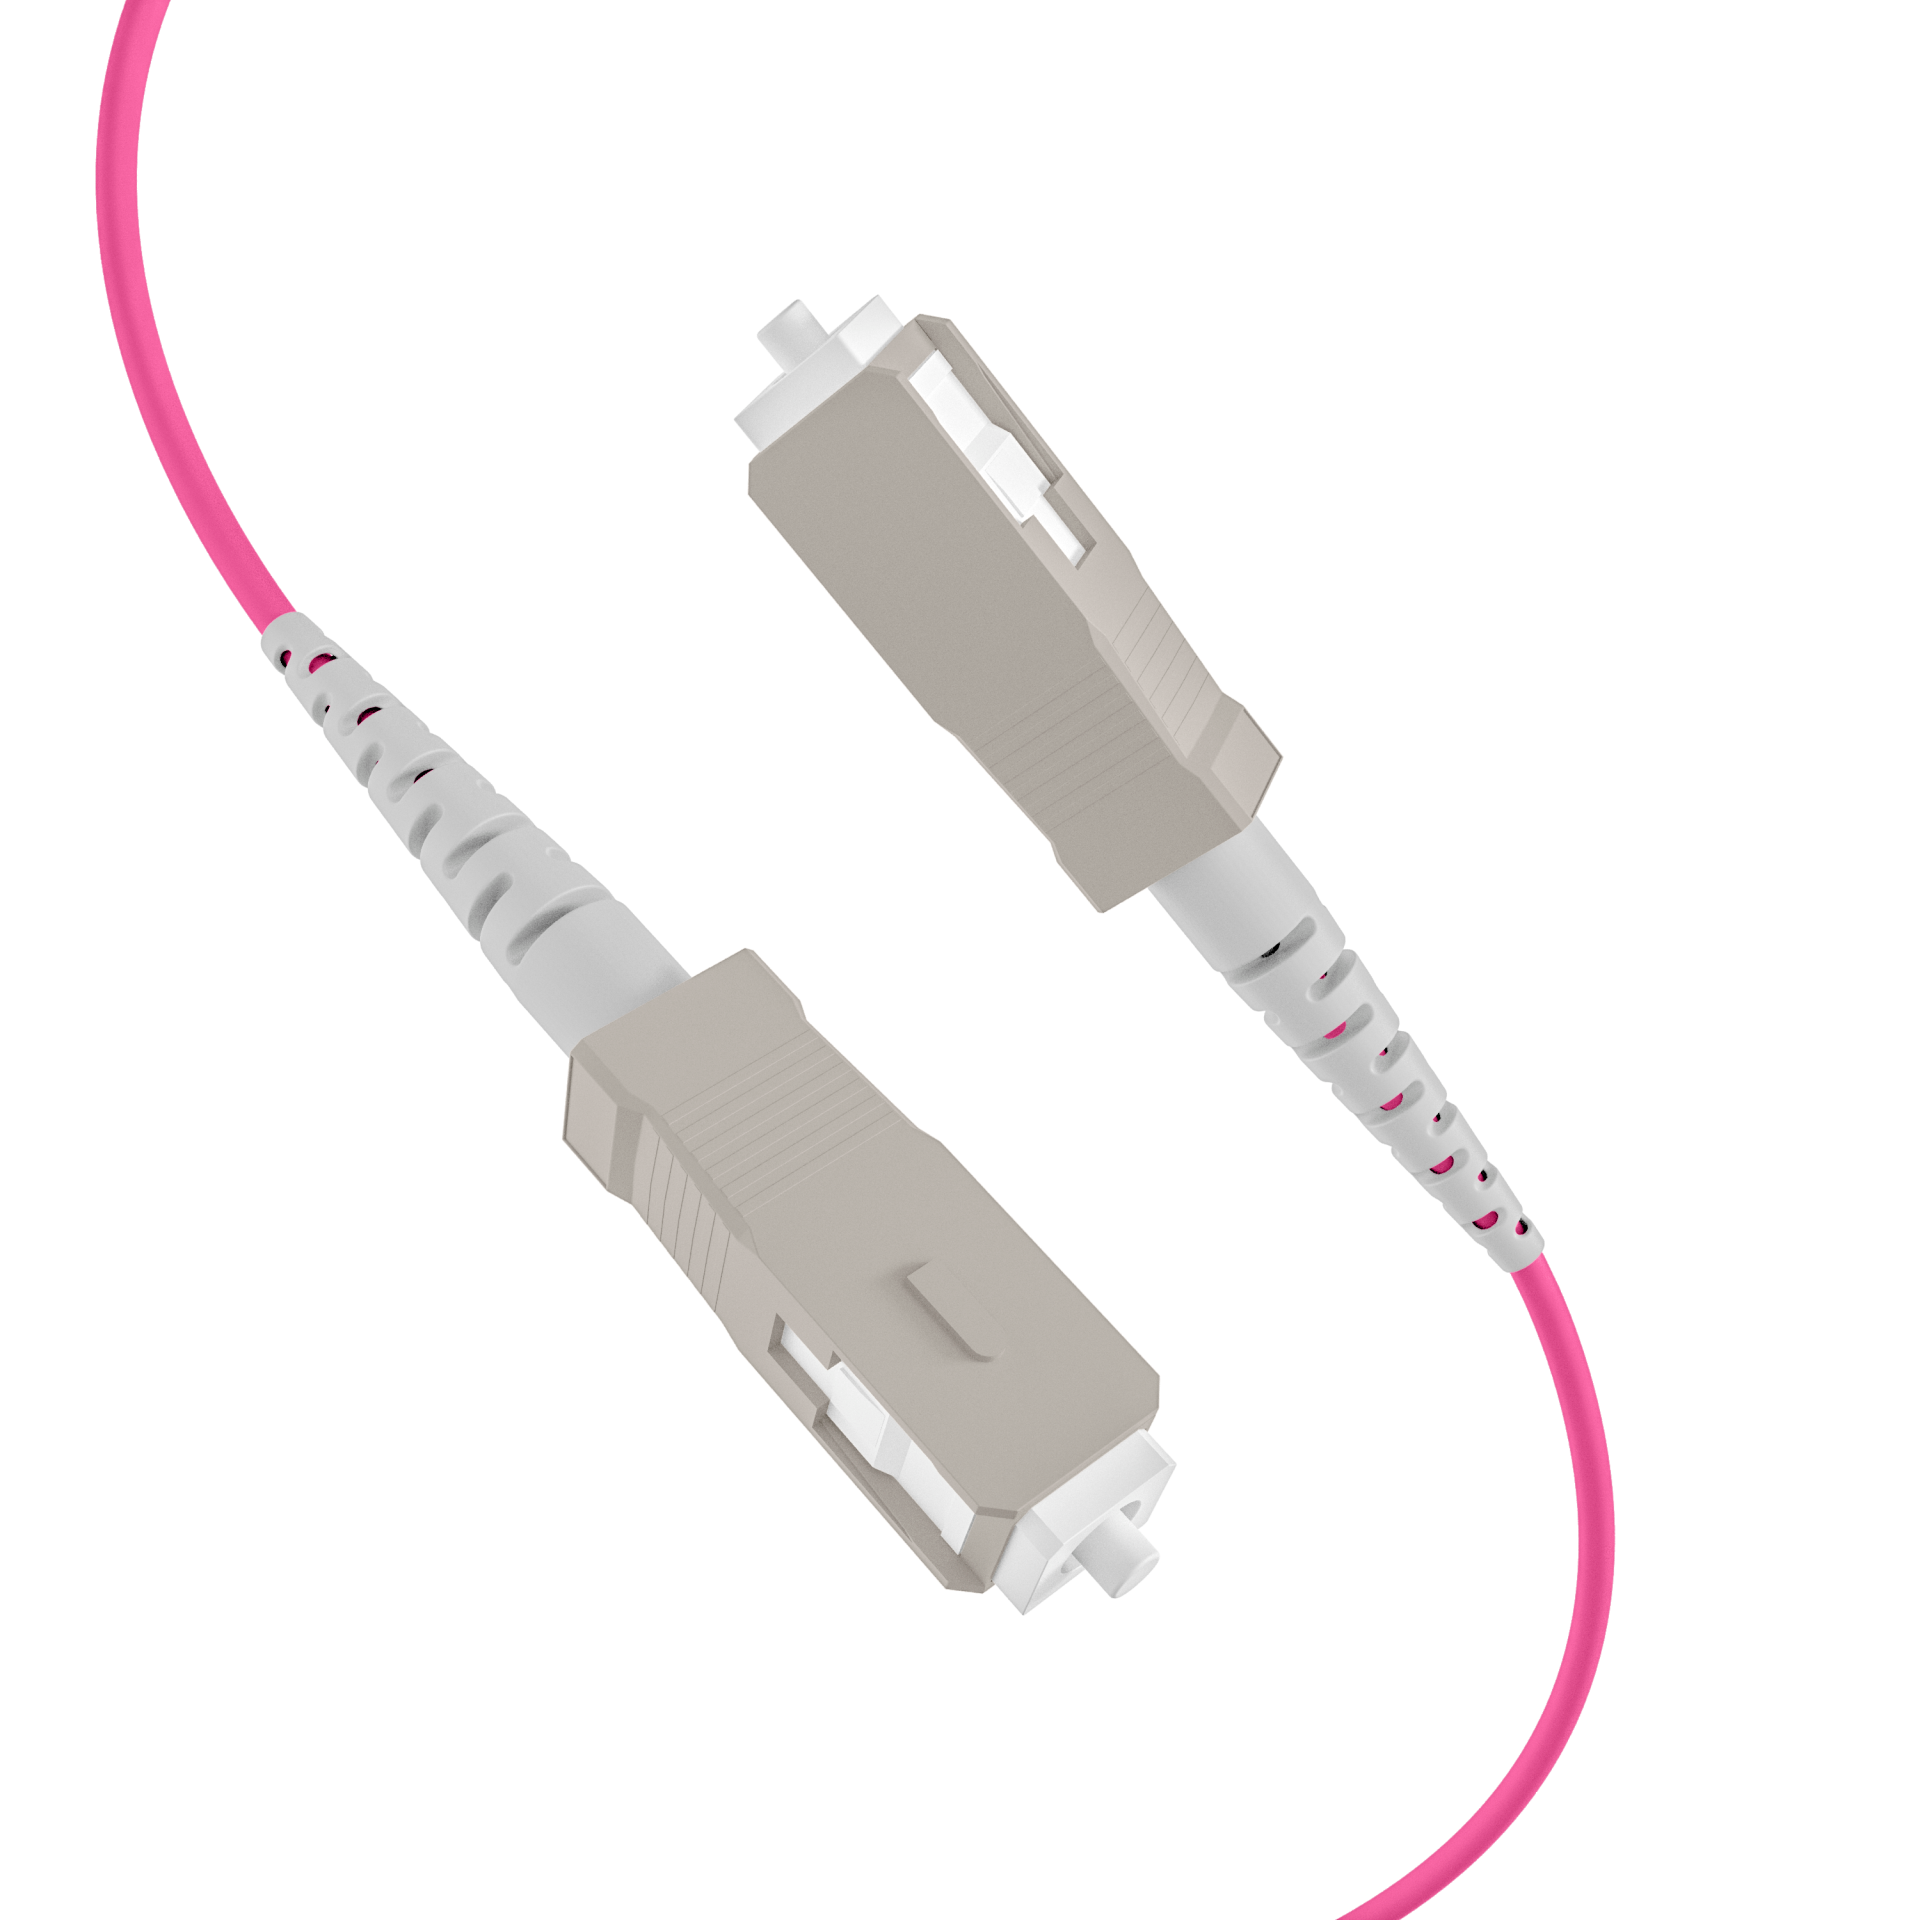 Trunk cable U-DQ(ZN)BH OM4 8G (1x8) SC-SC,150m Dca LSZH